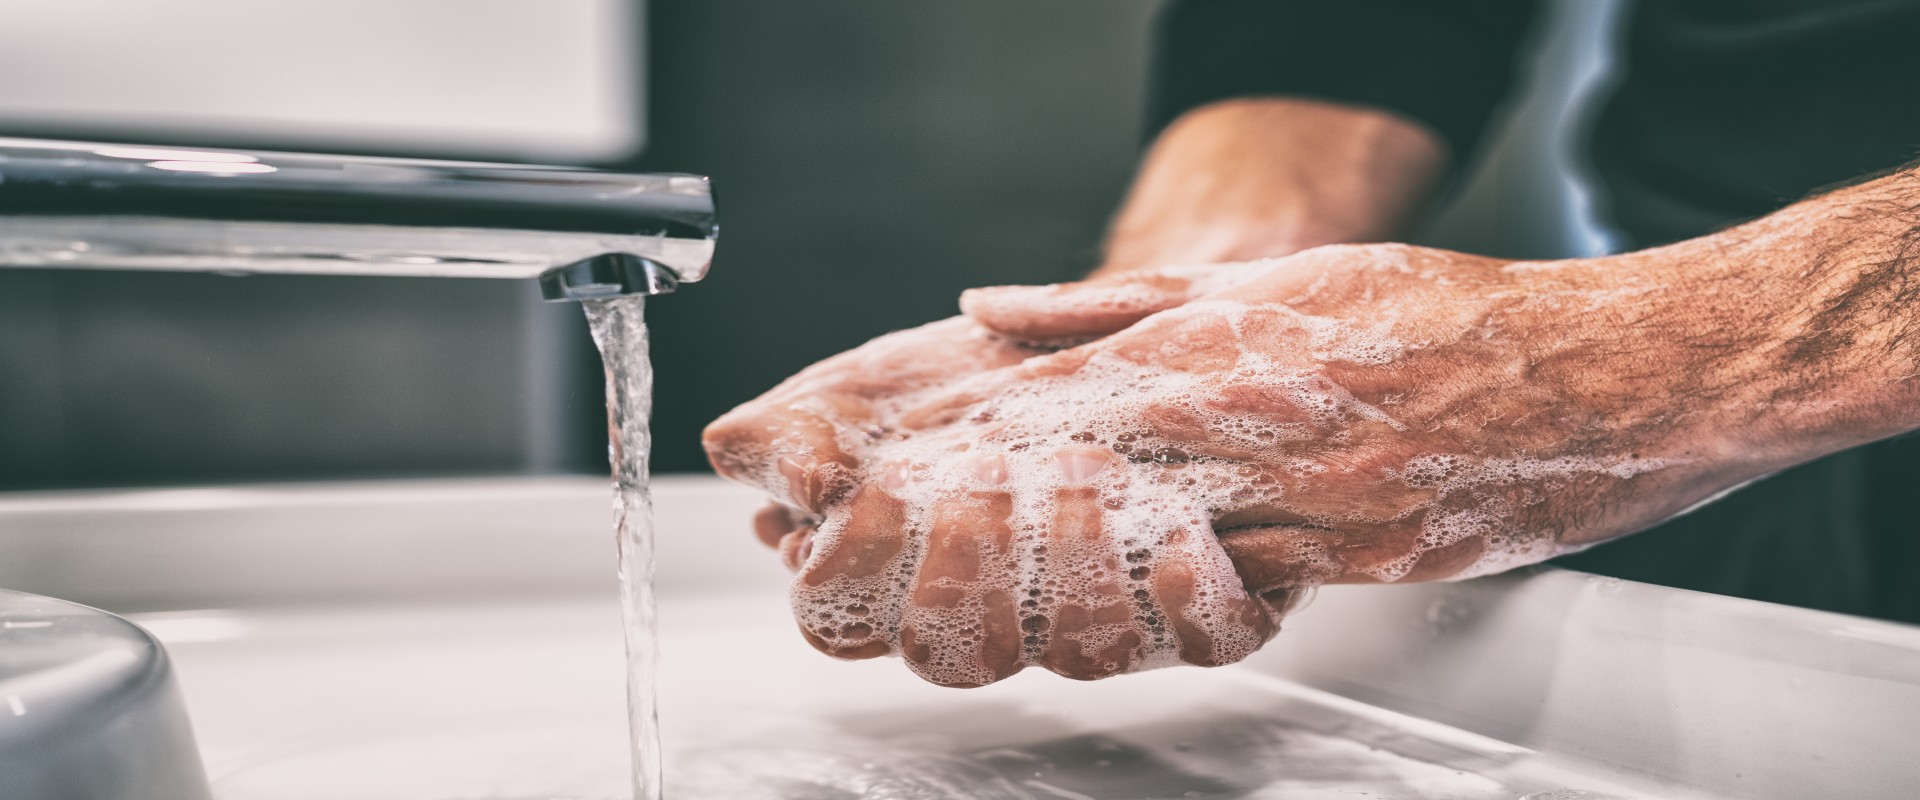 Comment nettoyer efficacement pour une bonne hygiène au quotidien ? 